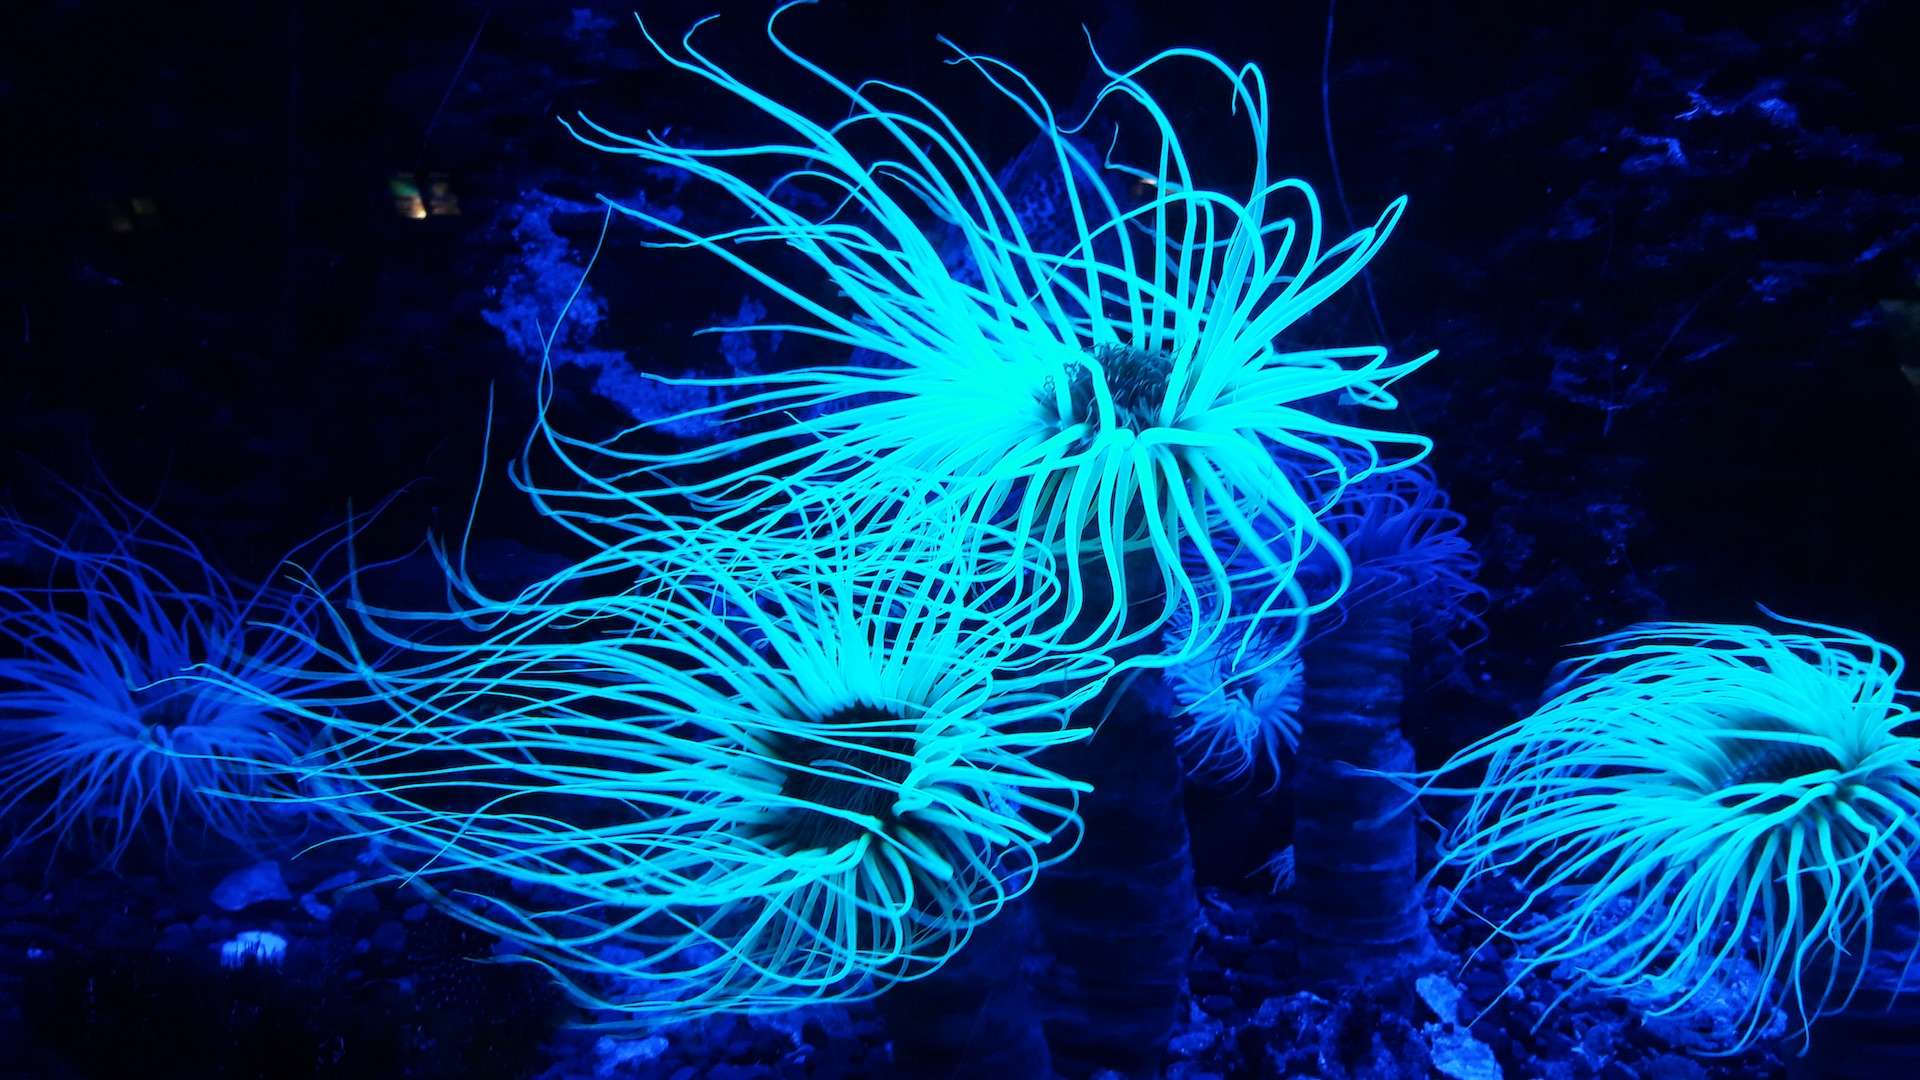 Planta bioluminiscente de arrecife de coral del océano.